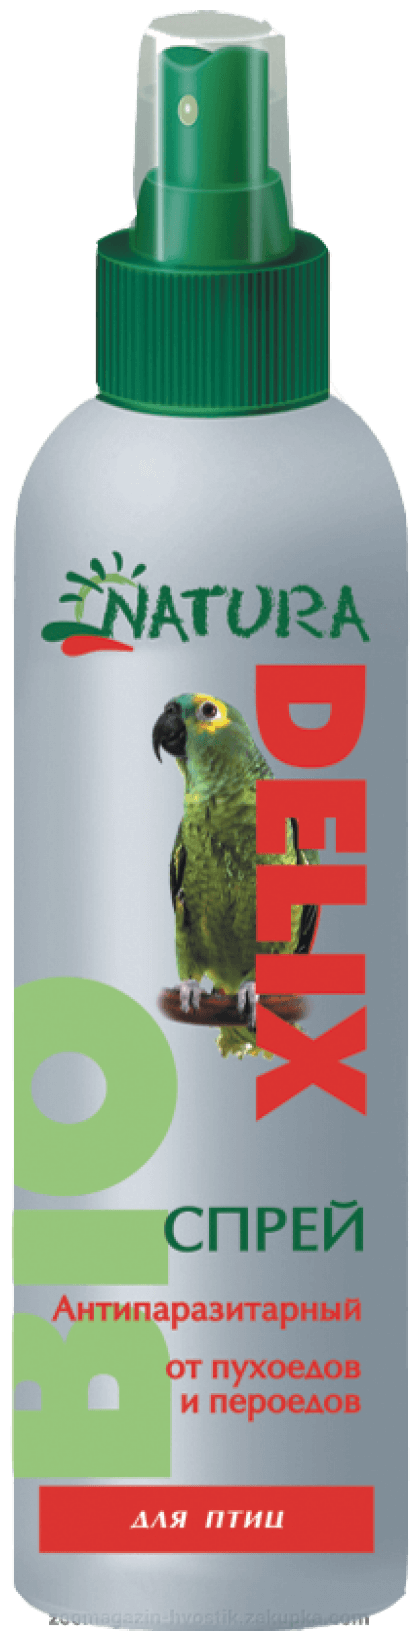 Delix Natura Bio спрей антипаразитарный от пухоедов и пероедов для птиц 150 мл